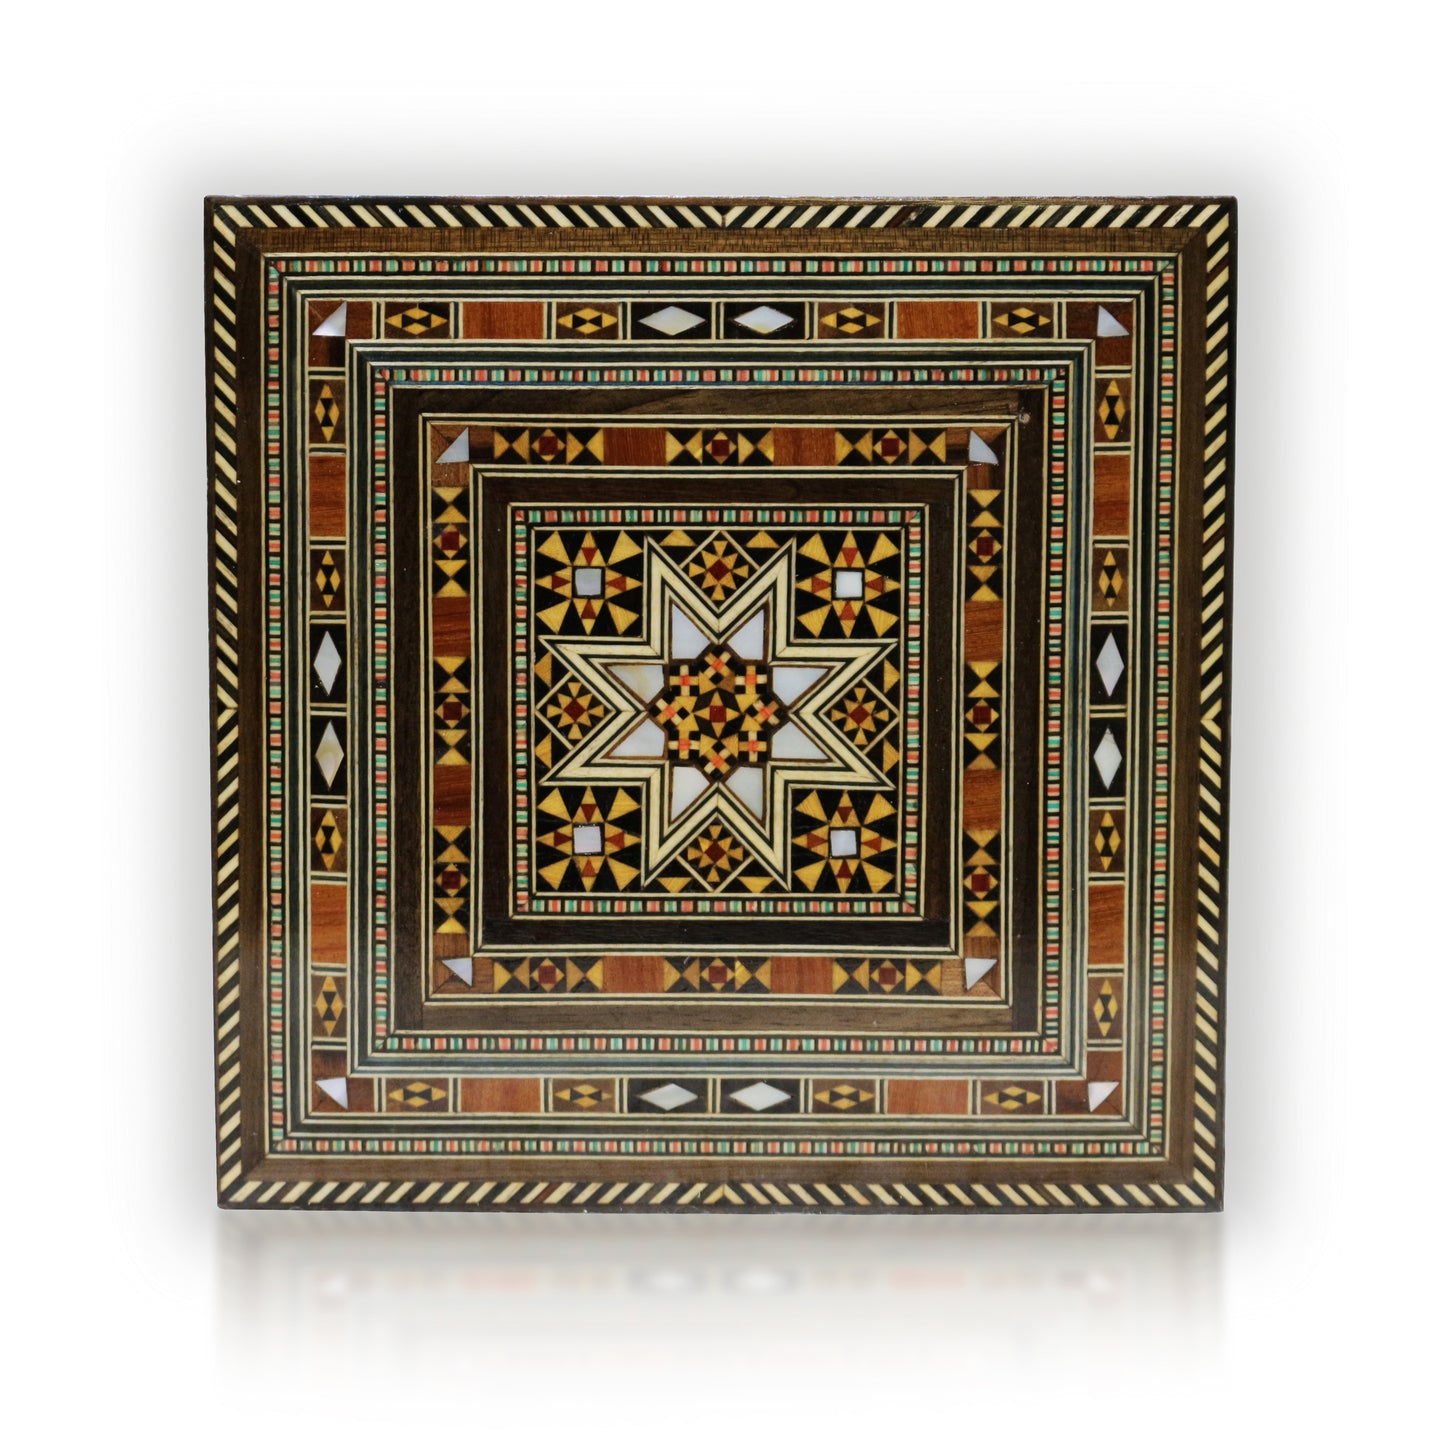 Neu Holz Mosaik Schatulle,Box,Kästchen, Damaskunst K 1-7-41 - Damaskunst - [variant_title]-[option1]